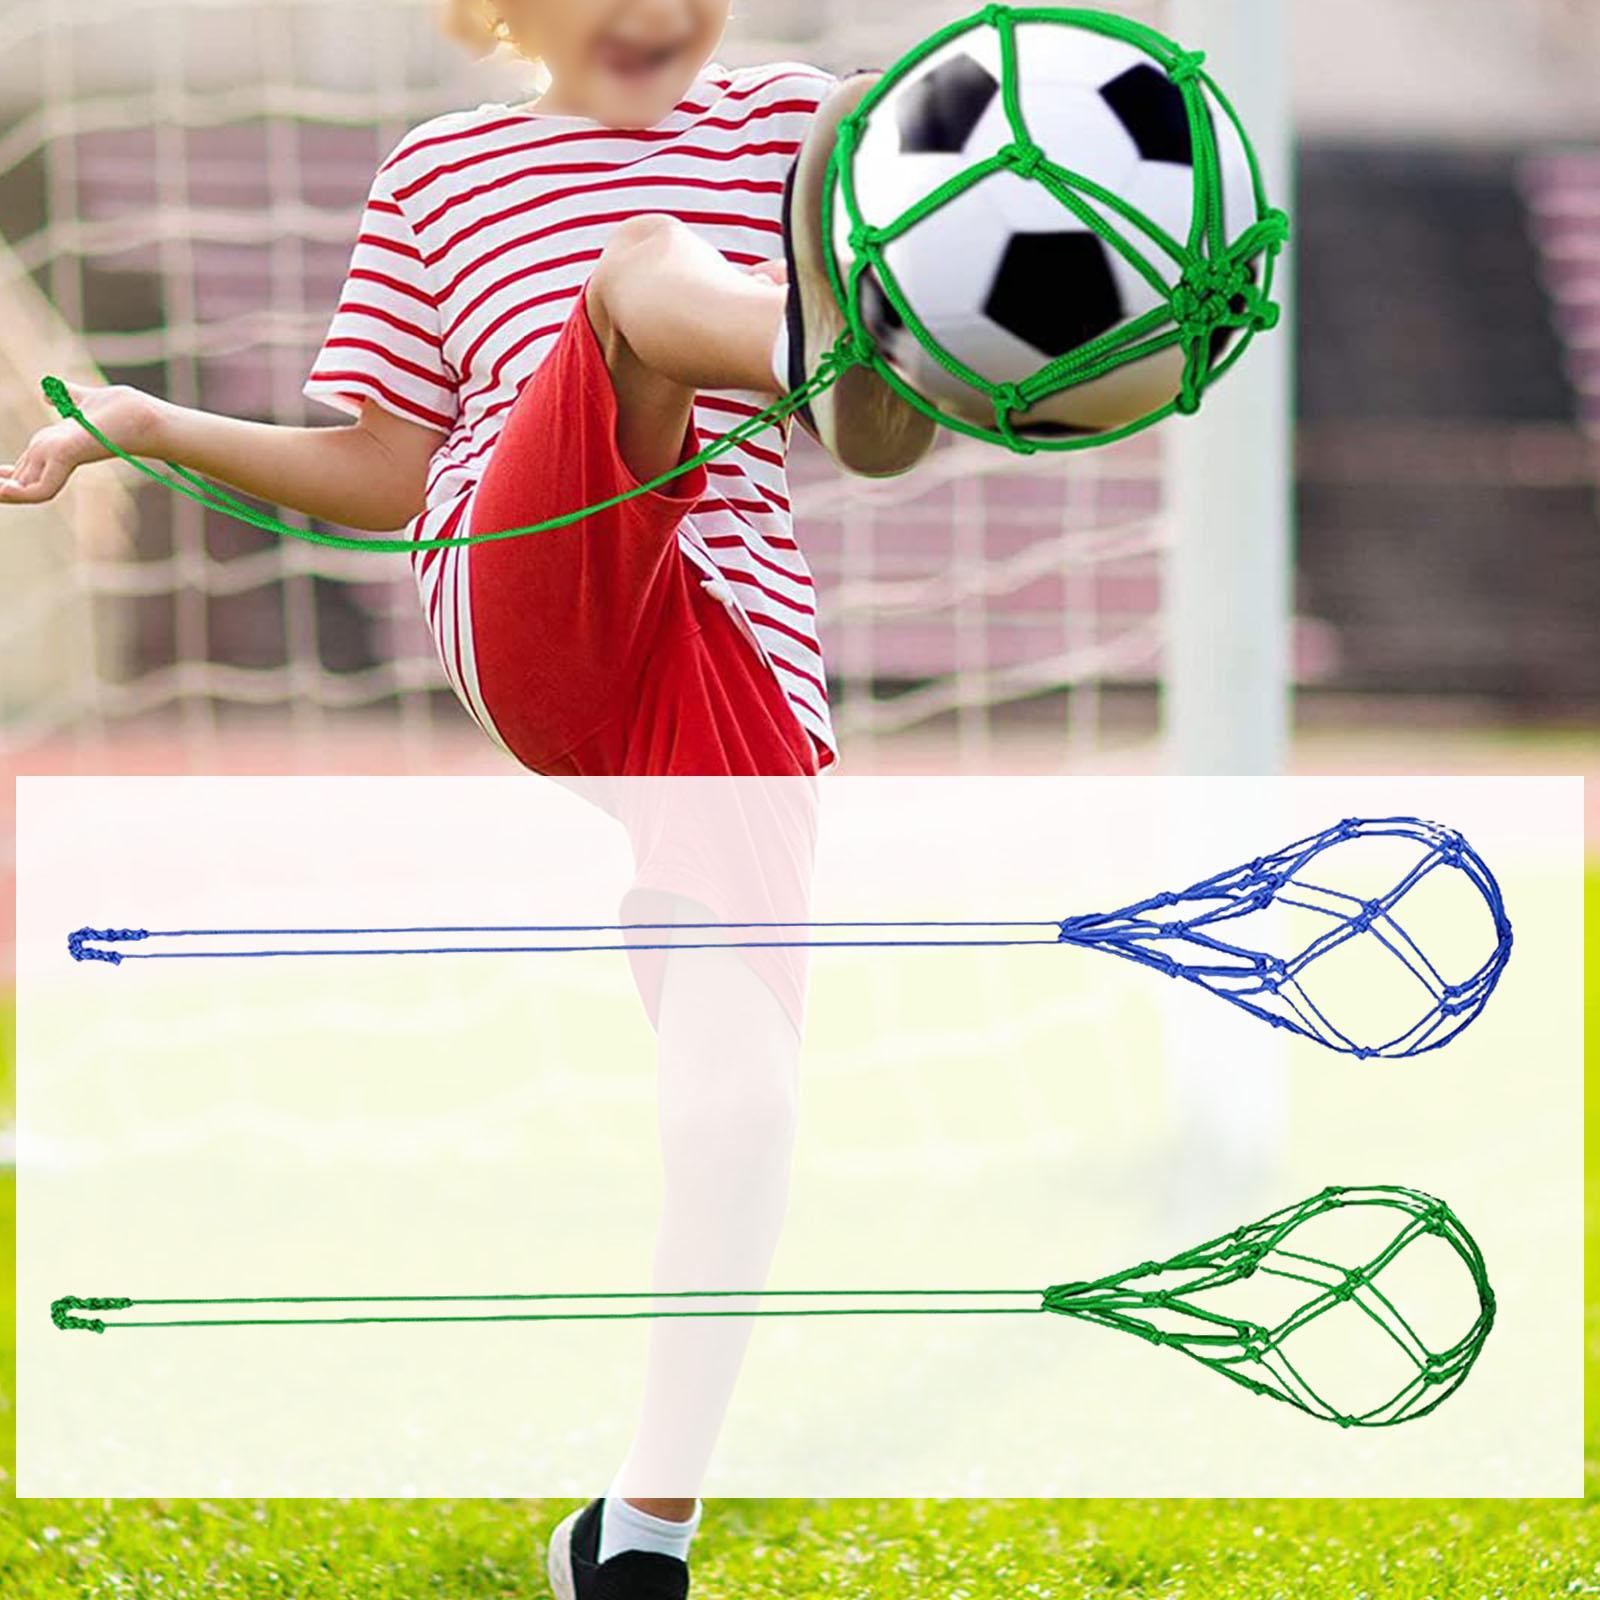 Soccer Kick Trainer for Ball Size 3, 4, 5 Football Trainer Soccer Kick Net